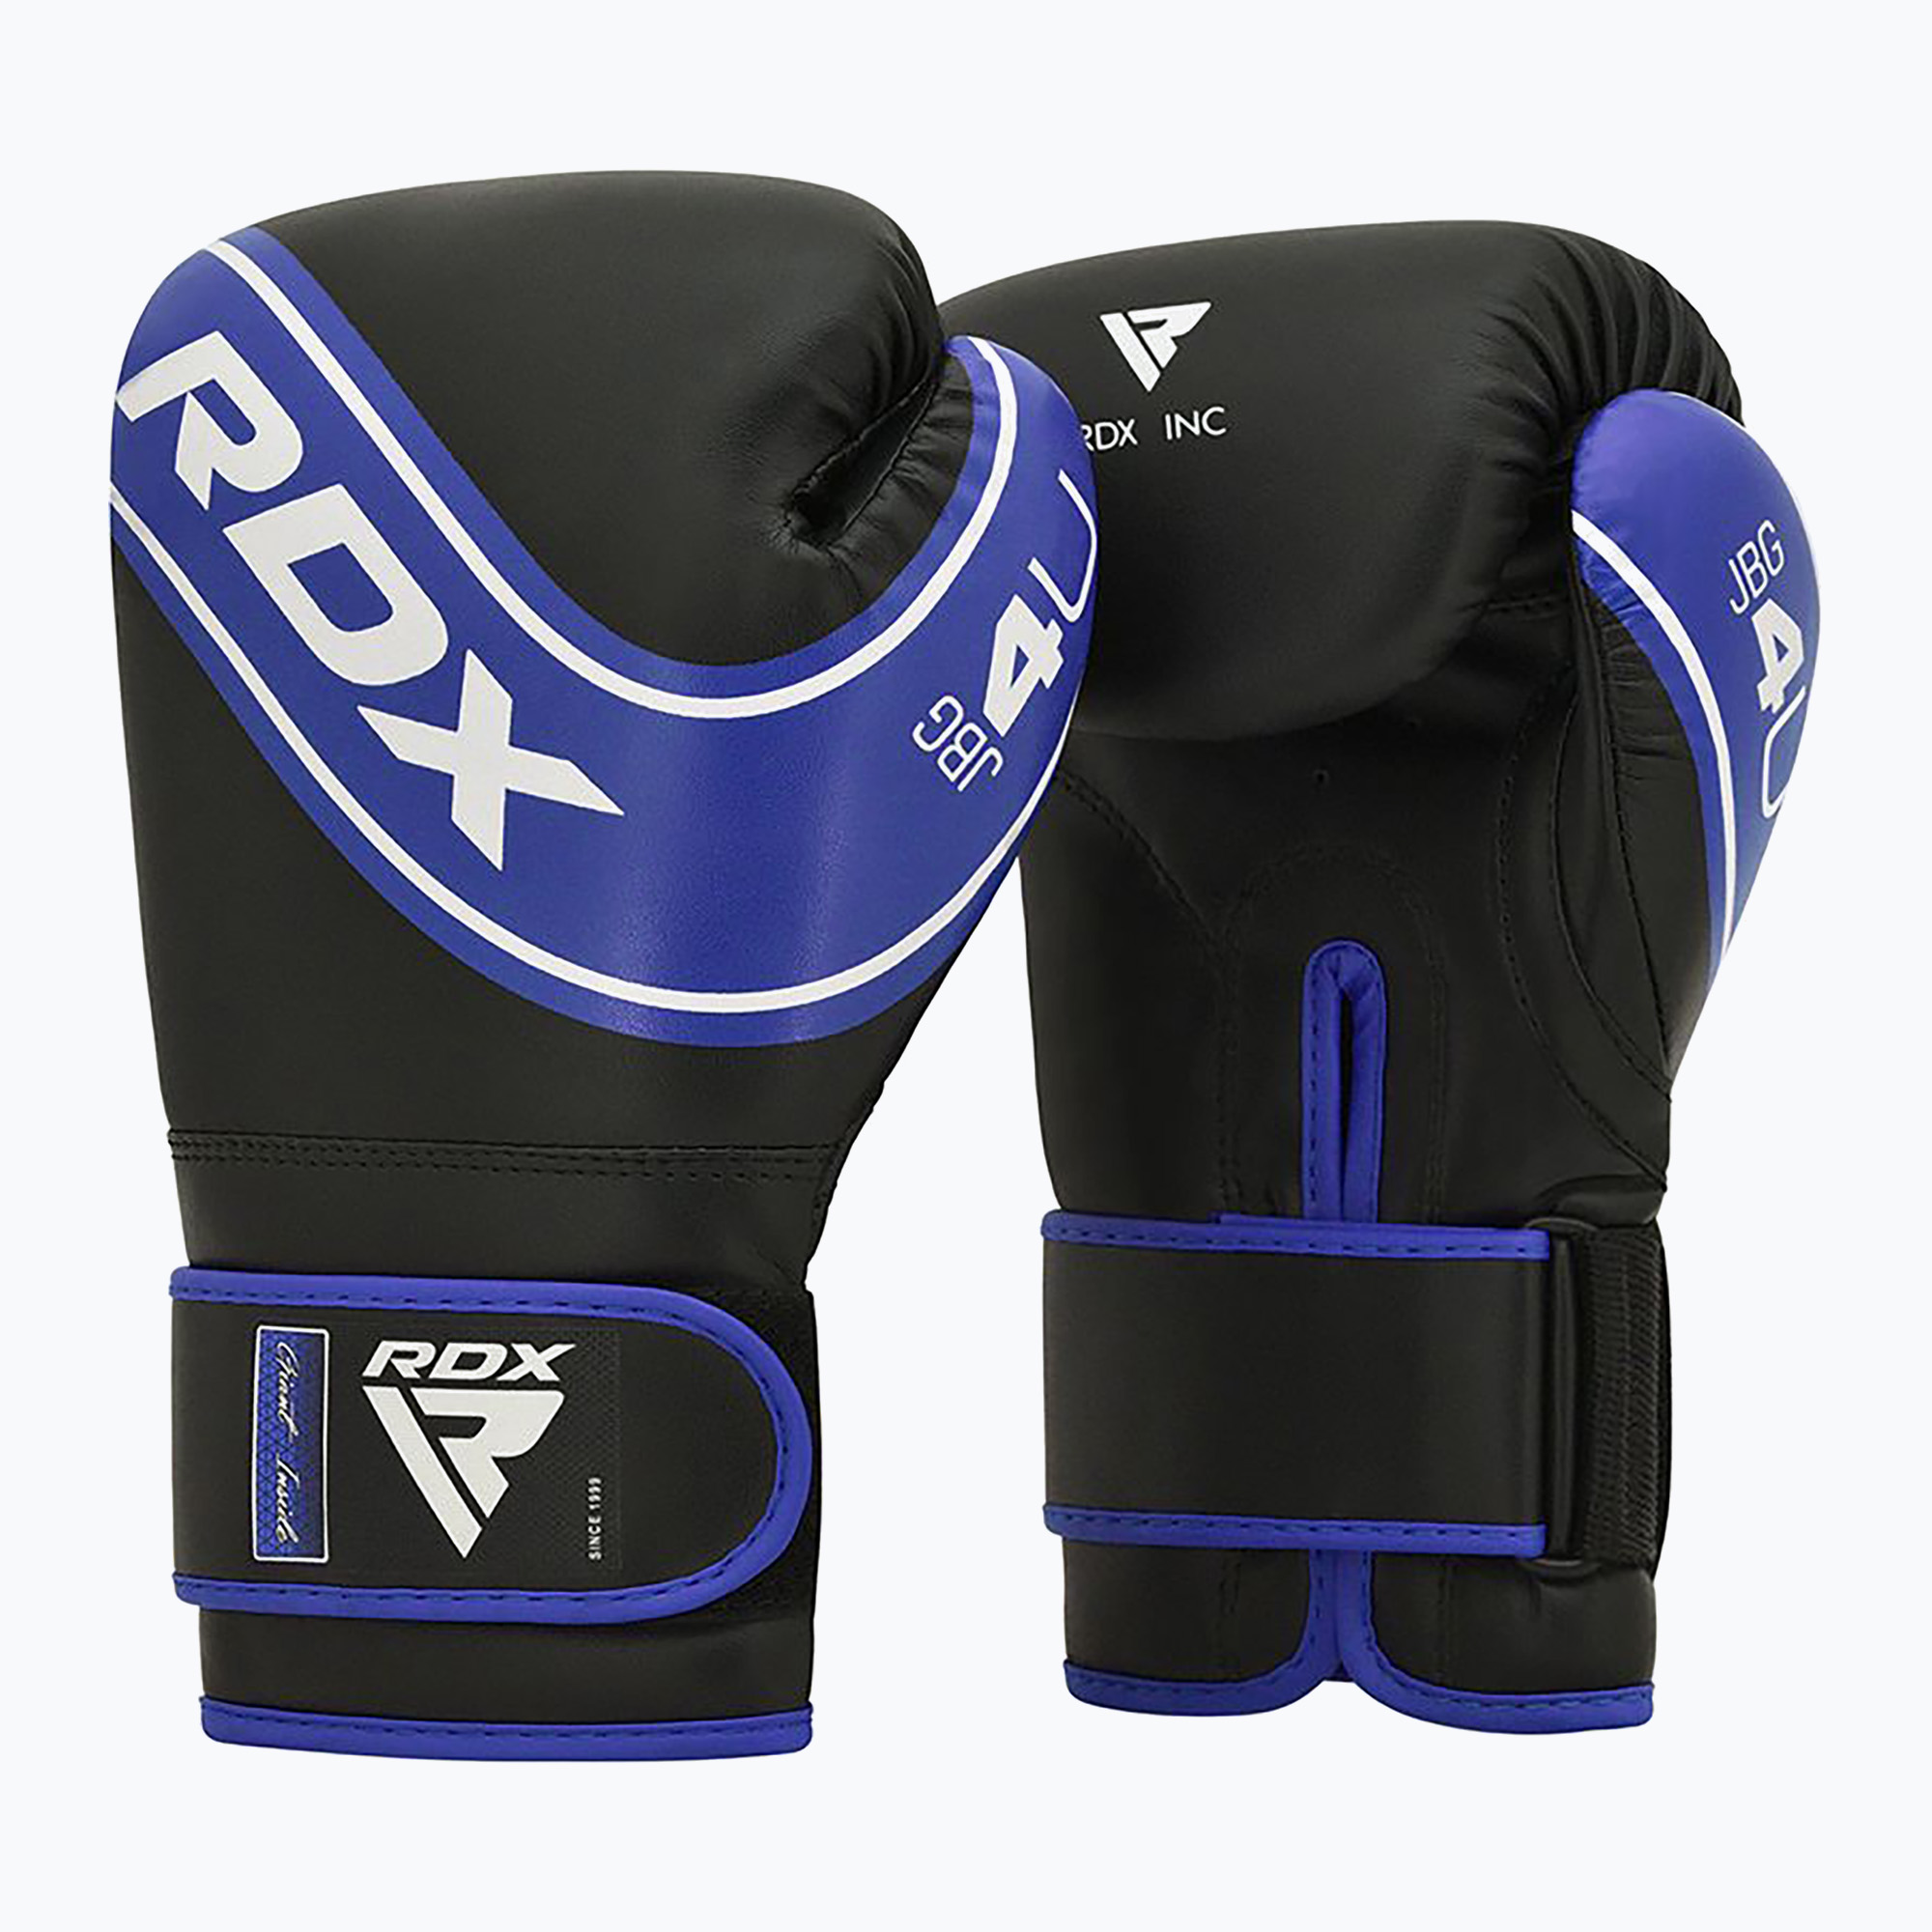 Mănuși de box pentru copii RDX JBG-4 albastru/negru